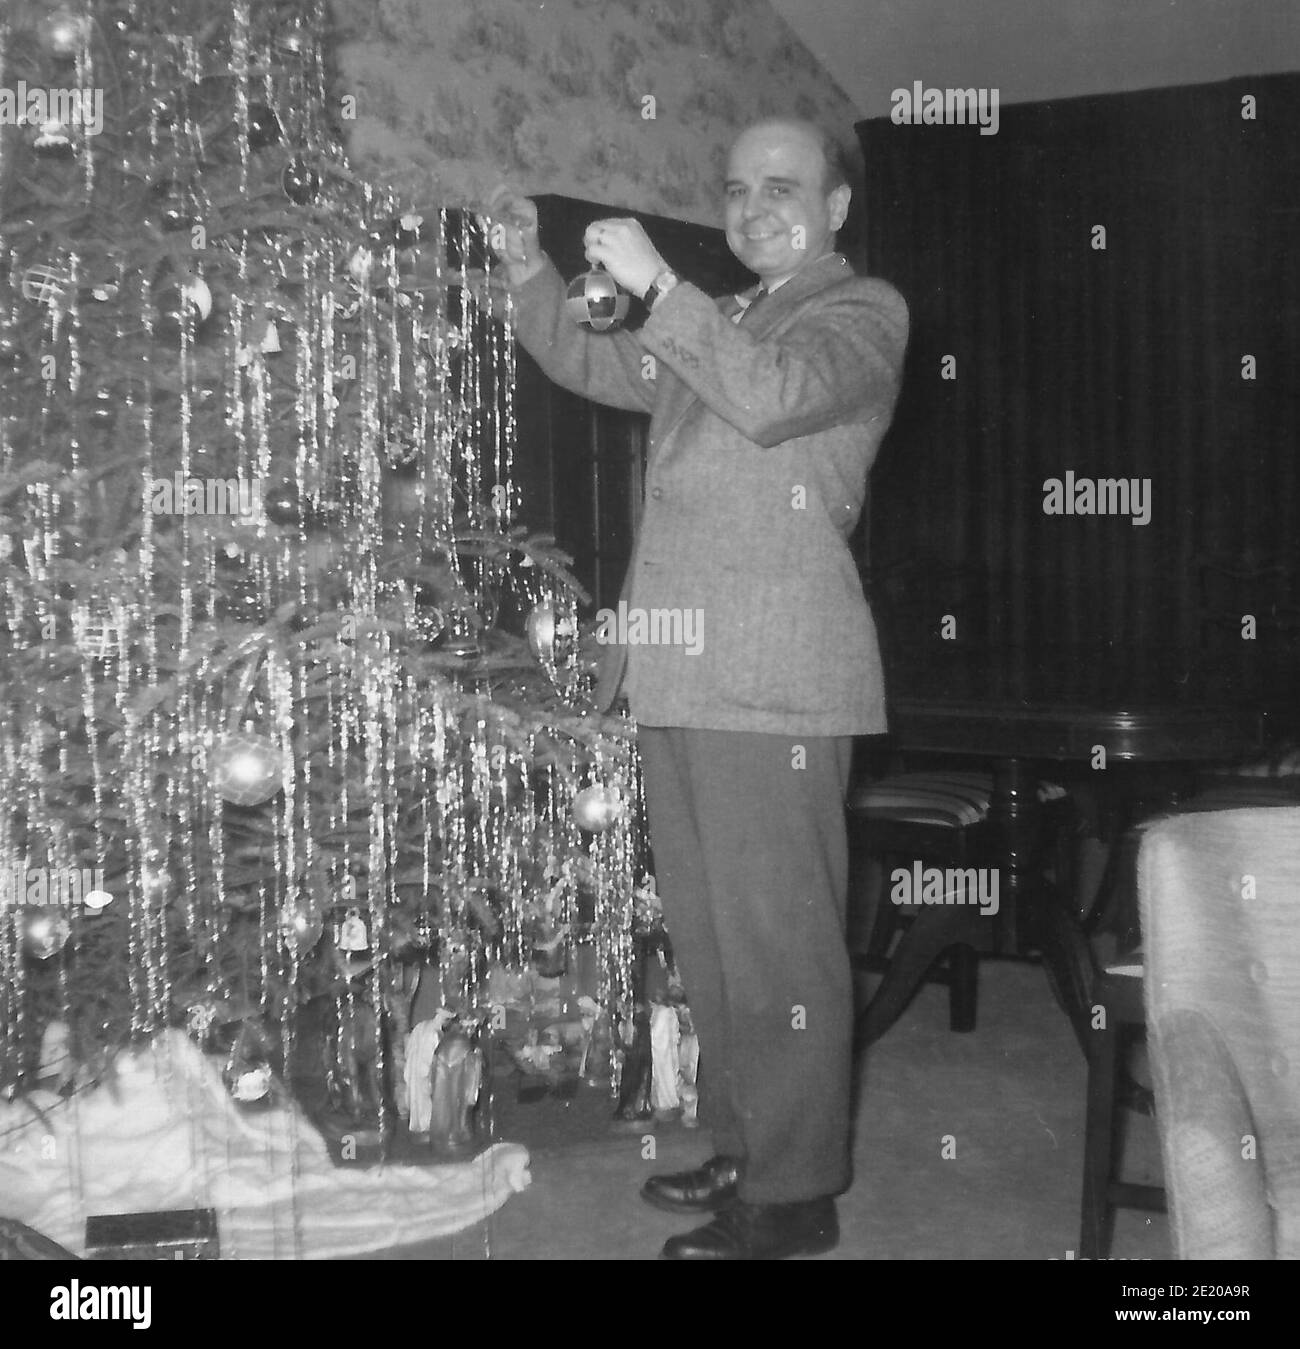 Ein Mann in einem Anzug, der einen Weihnachtsbaum schmückt - 1958 Stockfoto